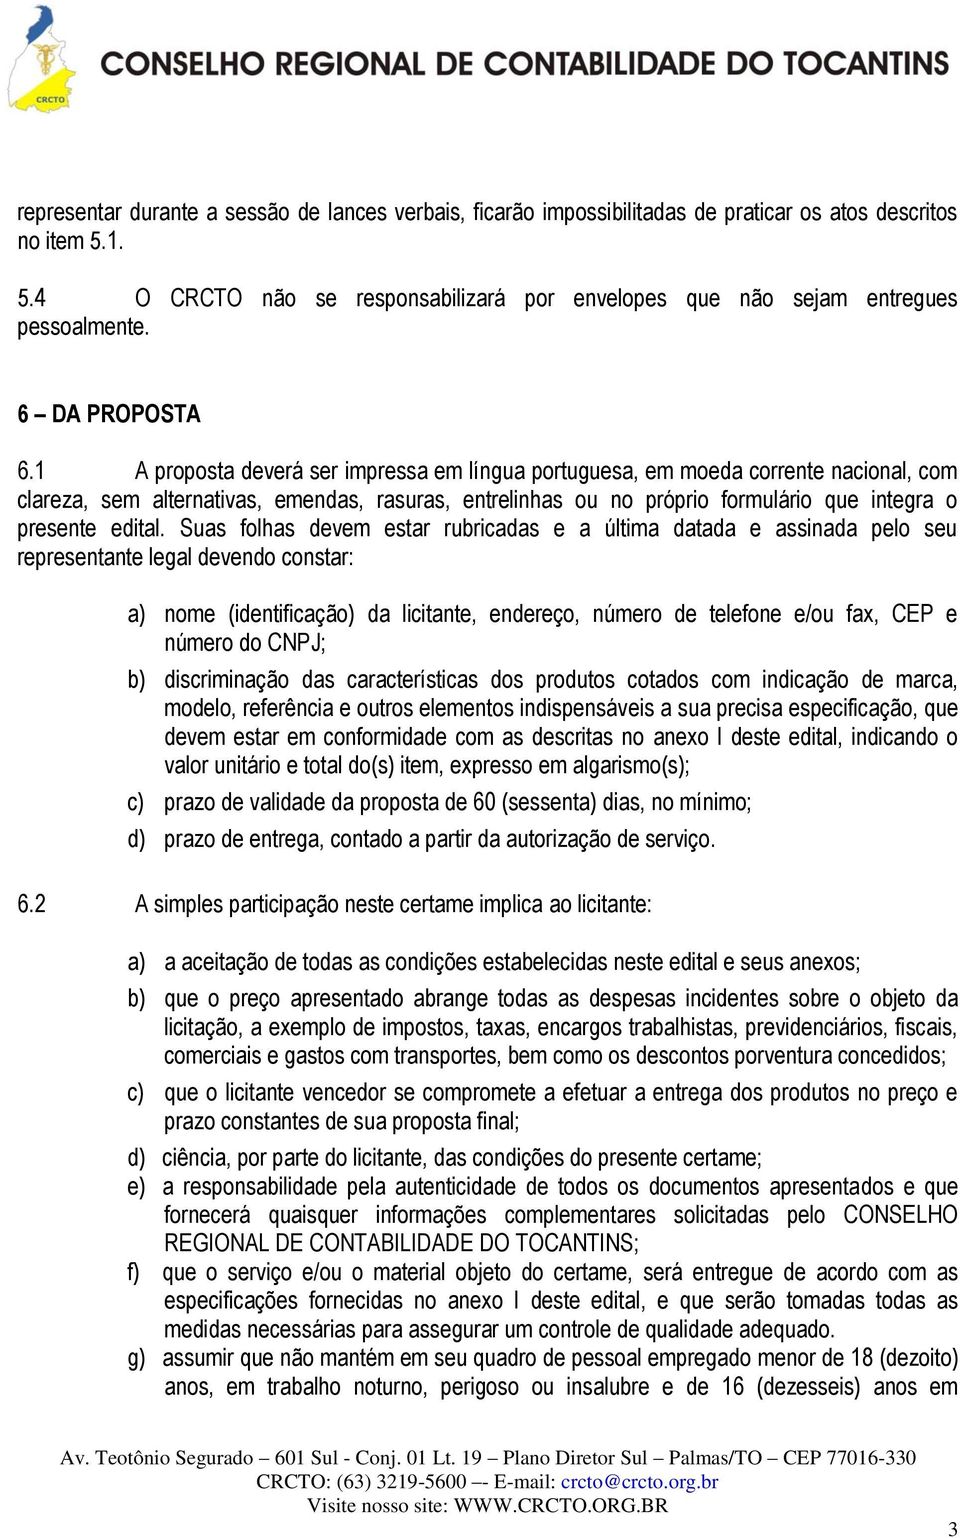 1 A proposta deverá ser impressa em língua portuguesa, em moeda corrente nacional, com clareza, sem alternativas, emendas, rasuras, entrelinhas ou no próprio formulário que integra o presente edital.